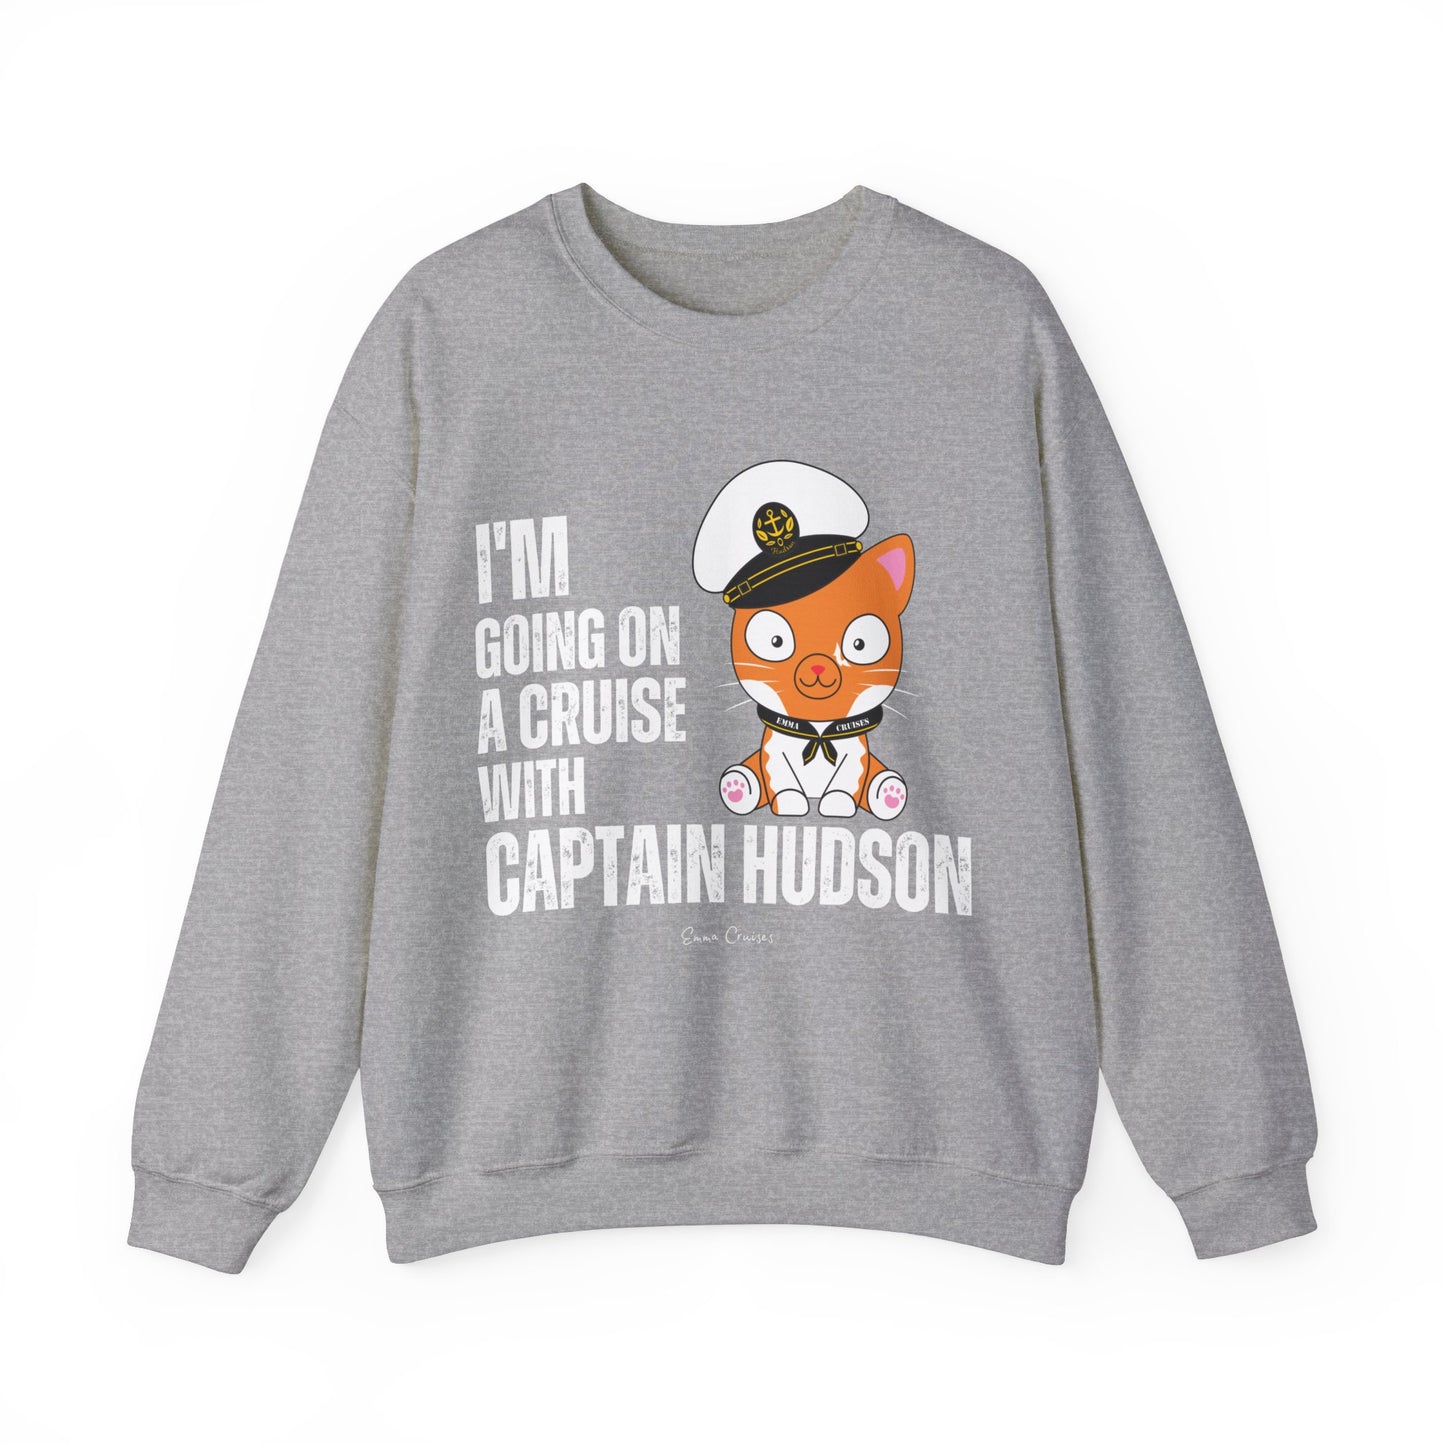 Ich gehe mit Captain Hudson auf eine Kreuzfahrt - UNISEX Crewneck Sweatshirt